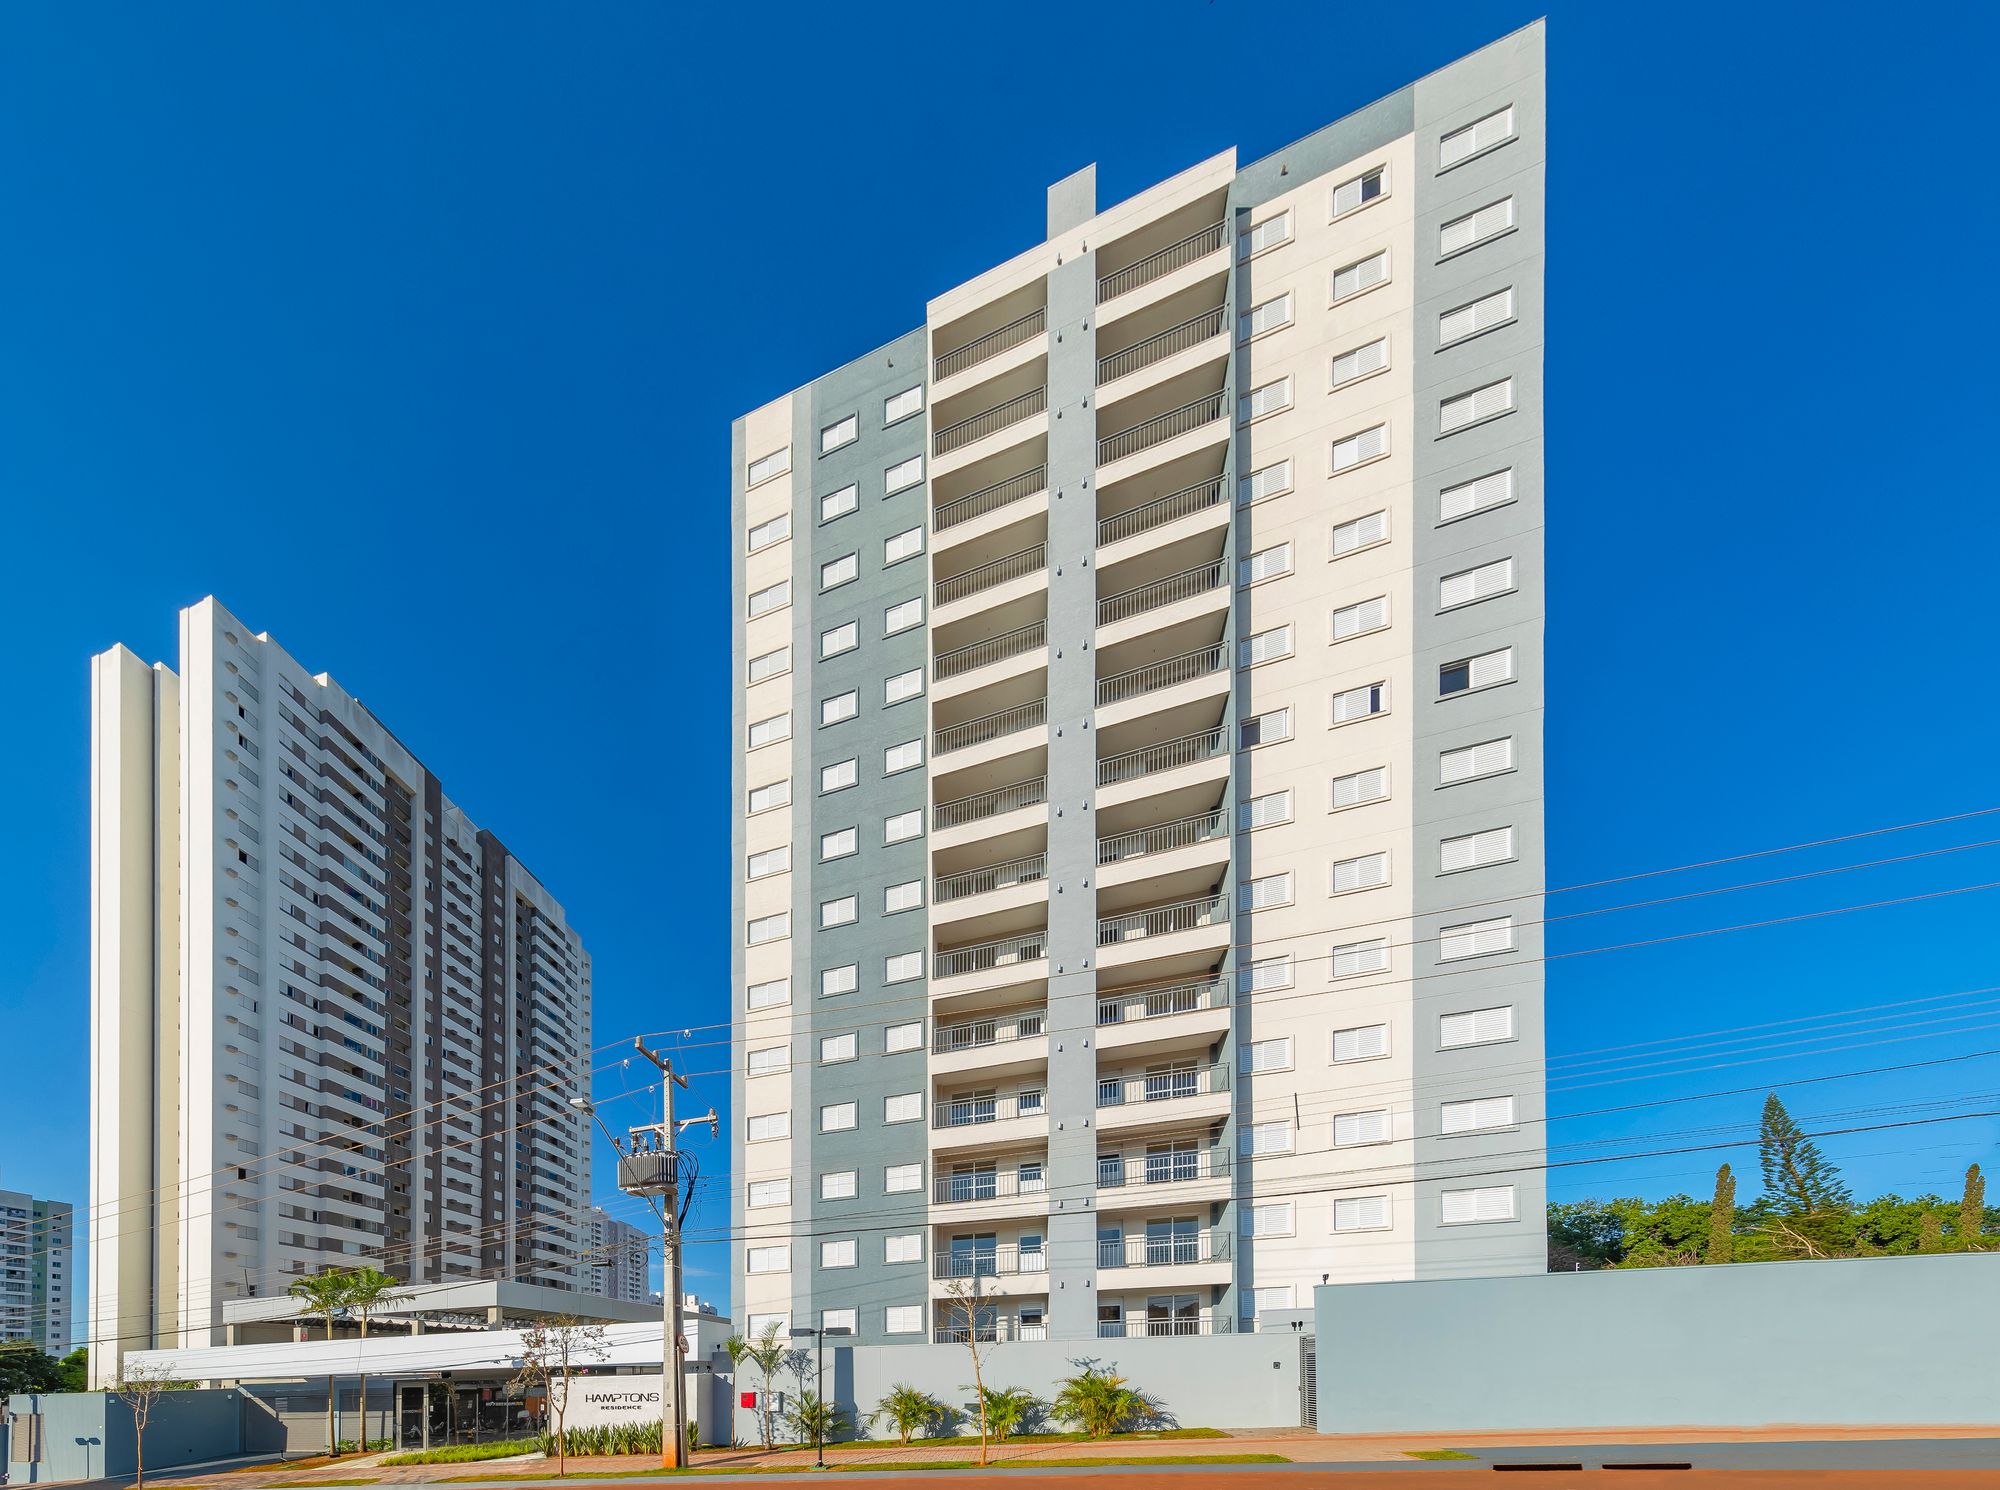 Empreendimento residencial inovador marca fase de expansão do bairro Aurora, em Londrina (PR)